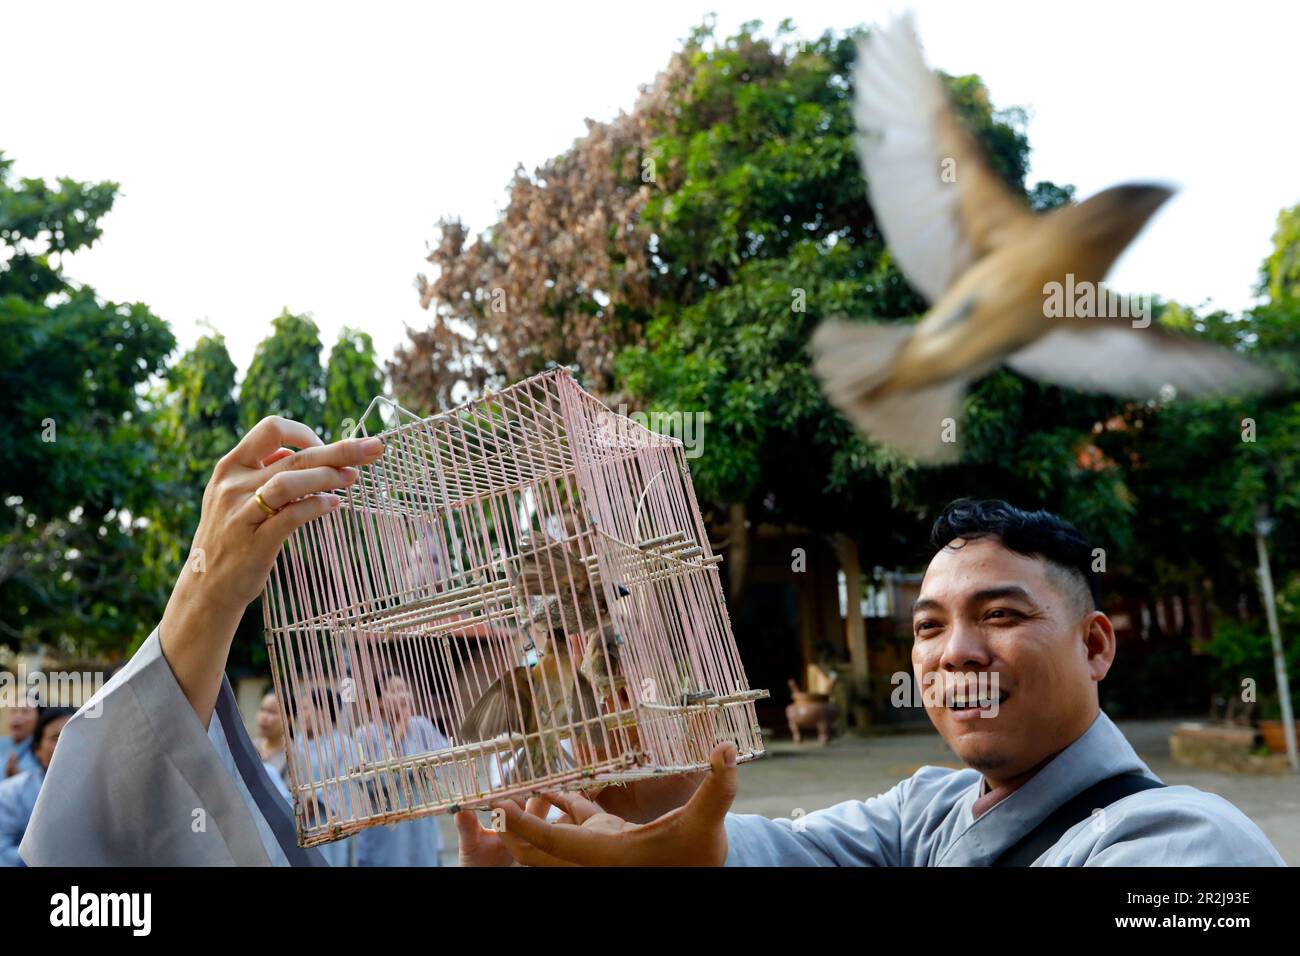 Tempio di Quan am Bo Tat, cerimonia buddista di liberazione di uccelli nel selvaggio per aiutare un individuo ad accumulare merito, Vung Tau, Vietnam, Indocina Foto Stock